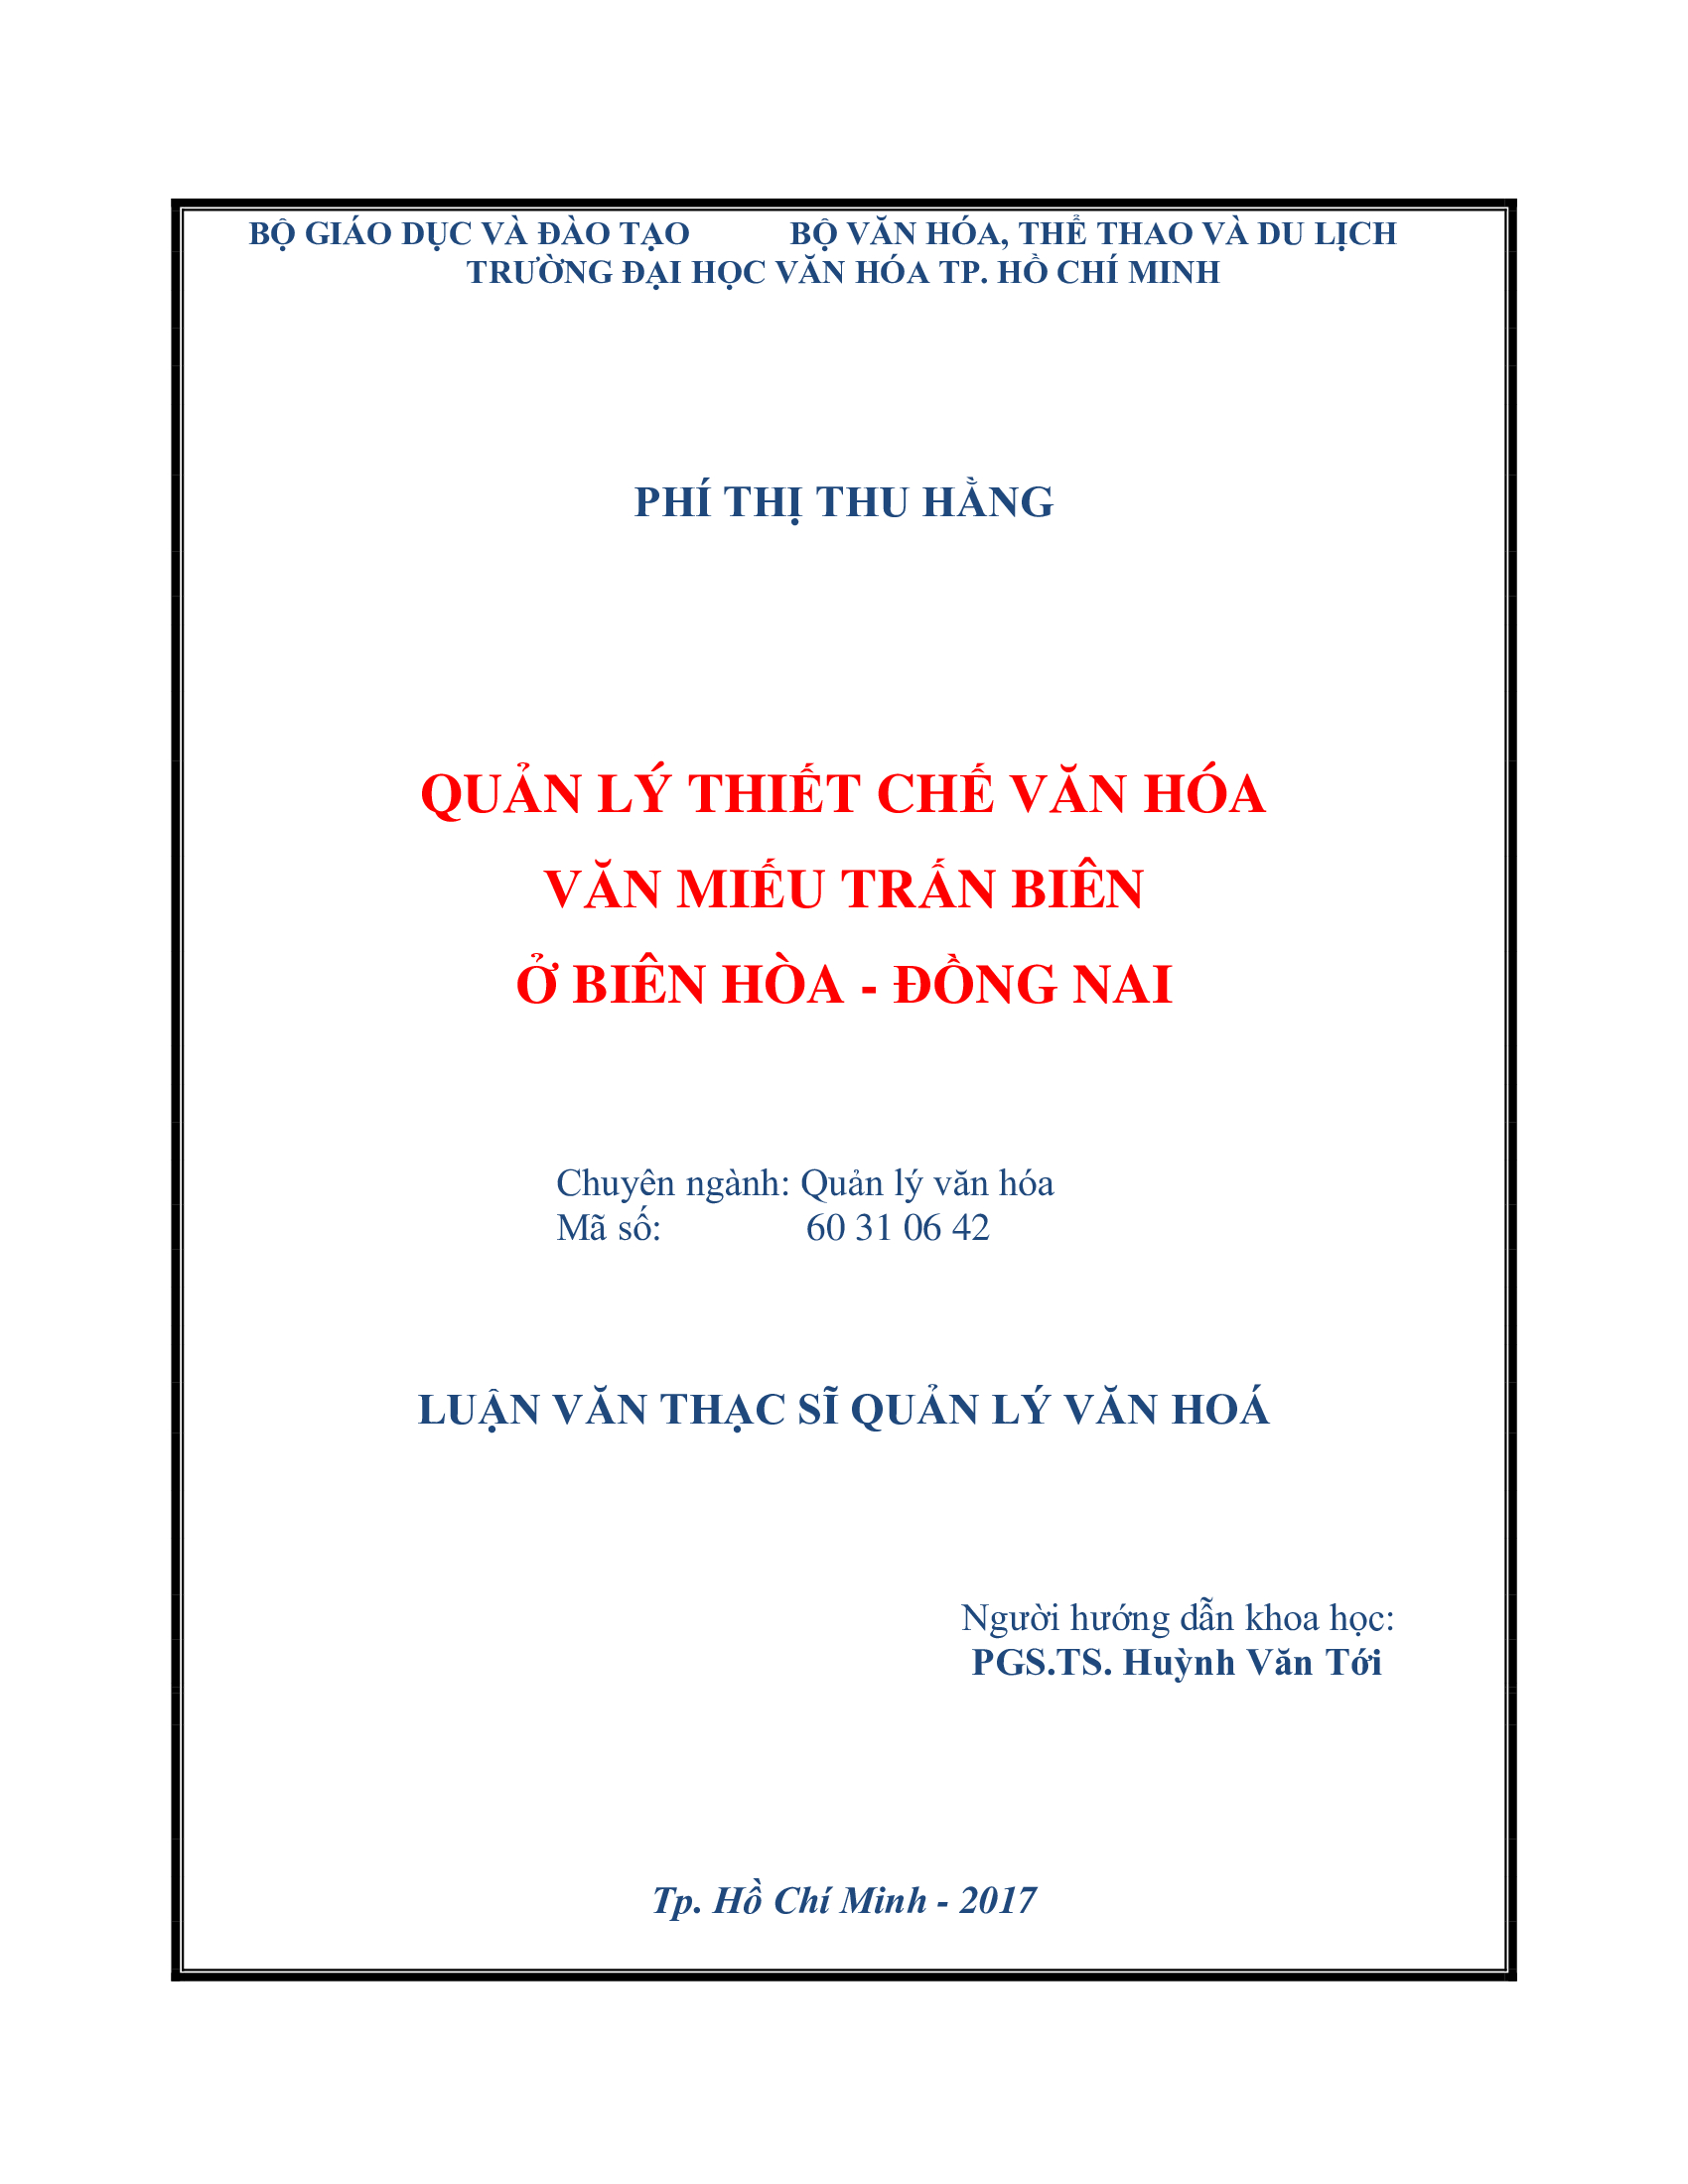 Quản lý thiết chế văn hóa Văn miếu Trấn Biên ở Biên Hòa - Đồng Nai